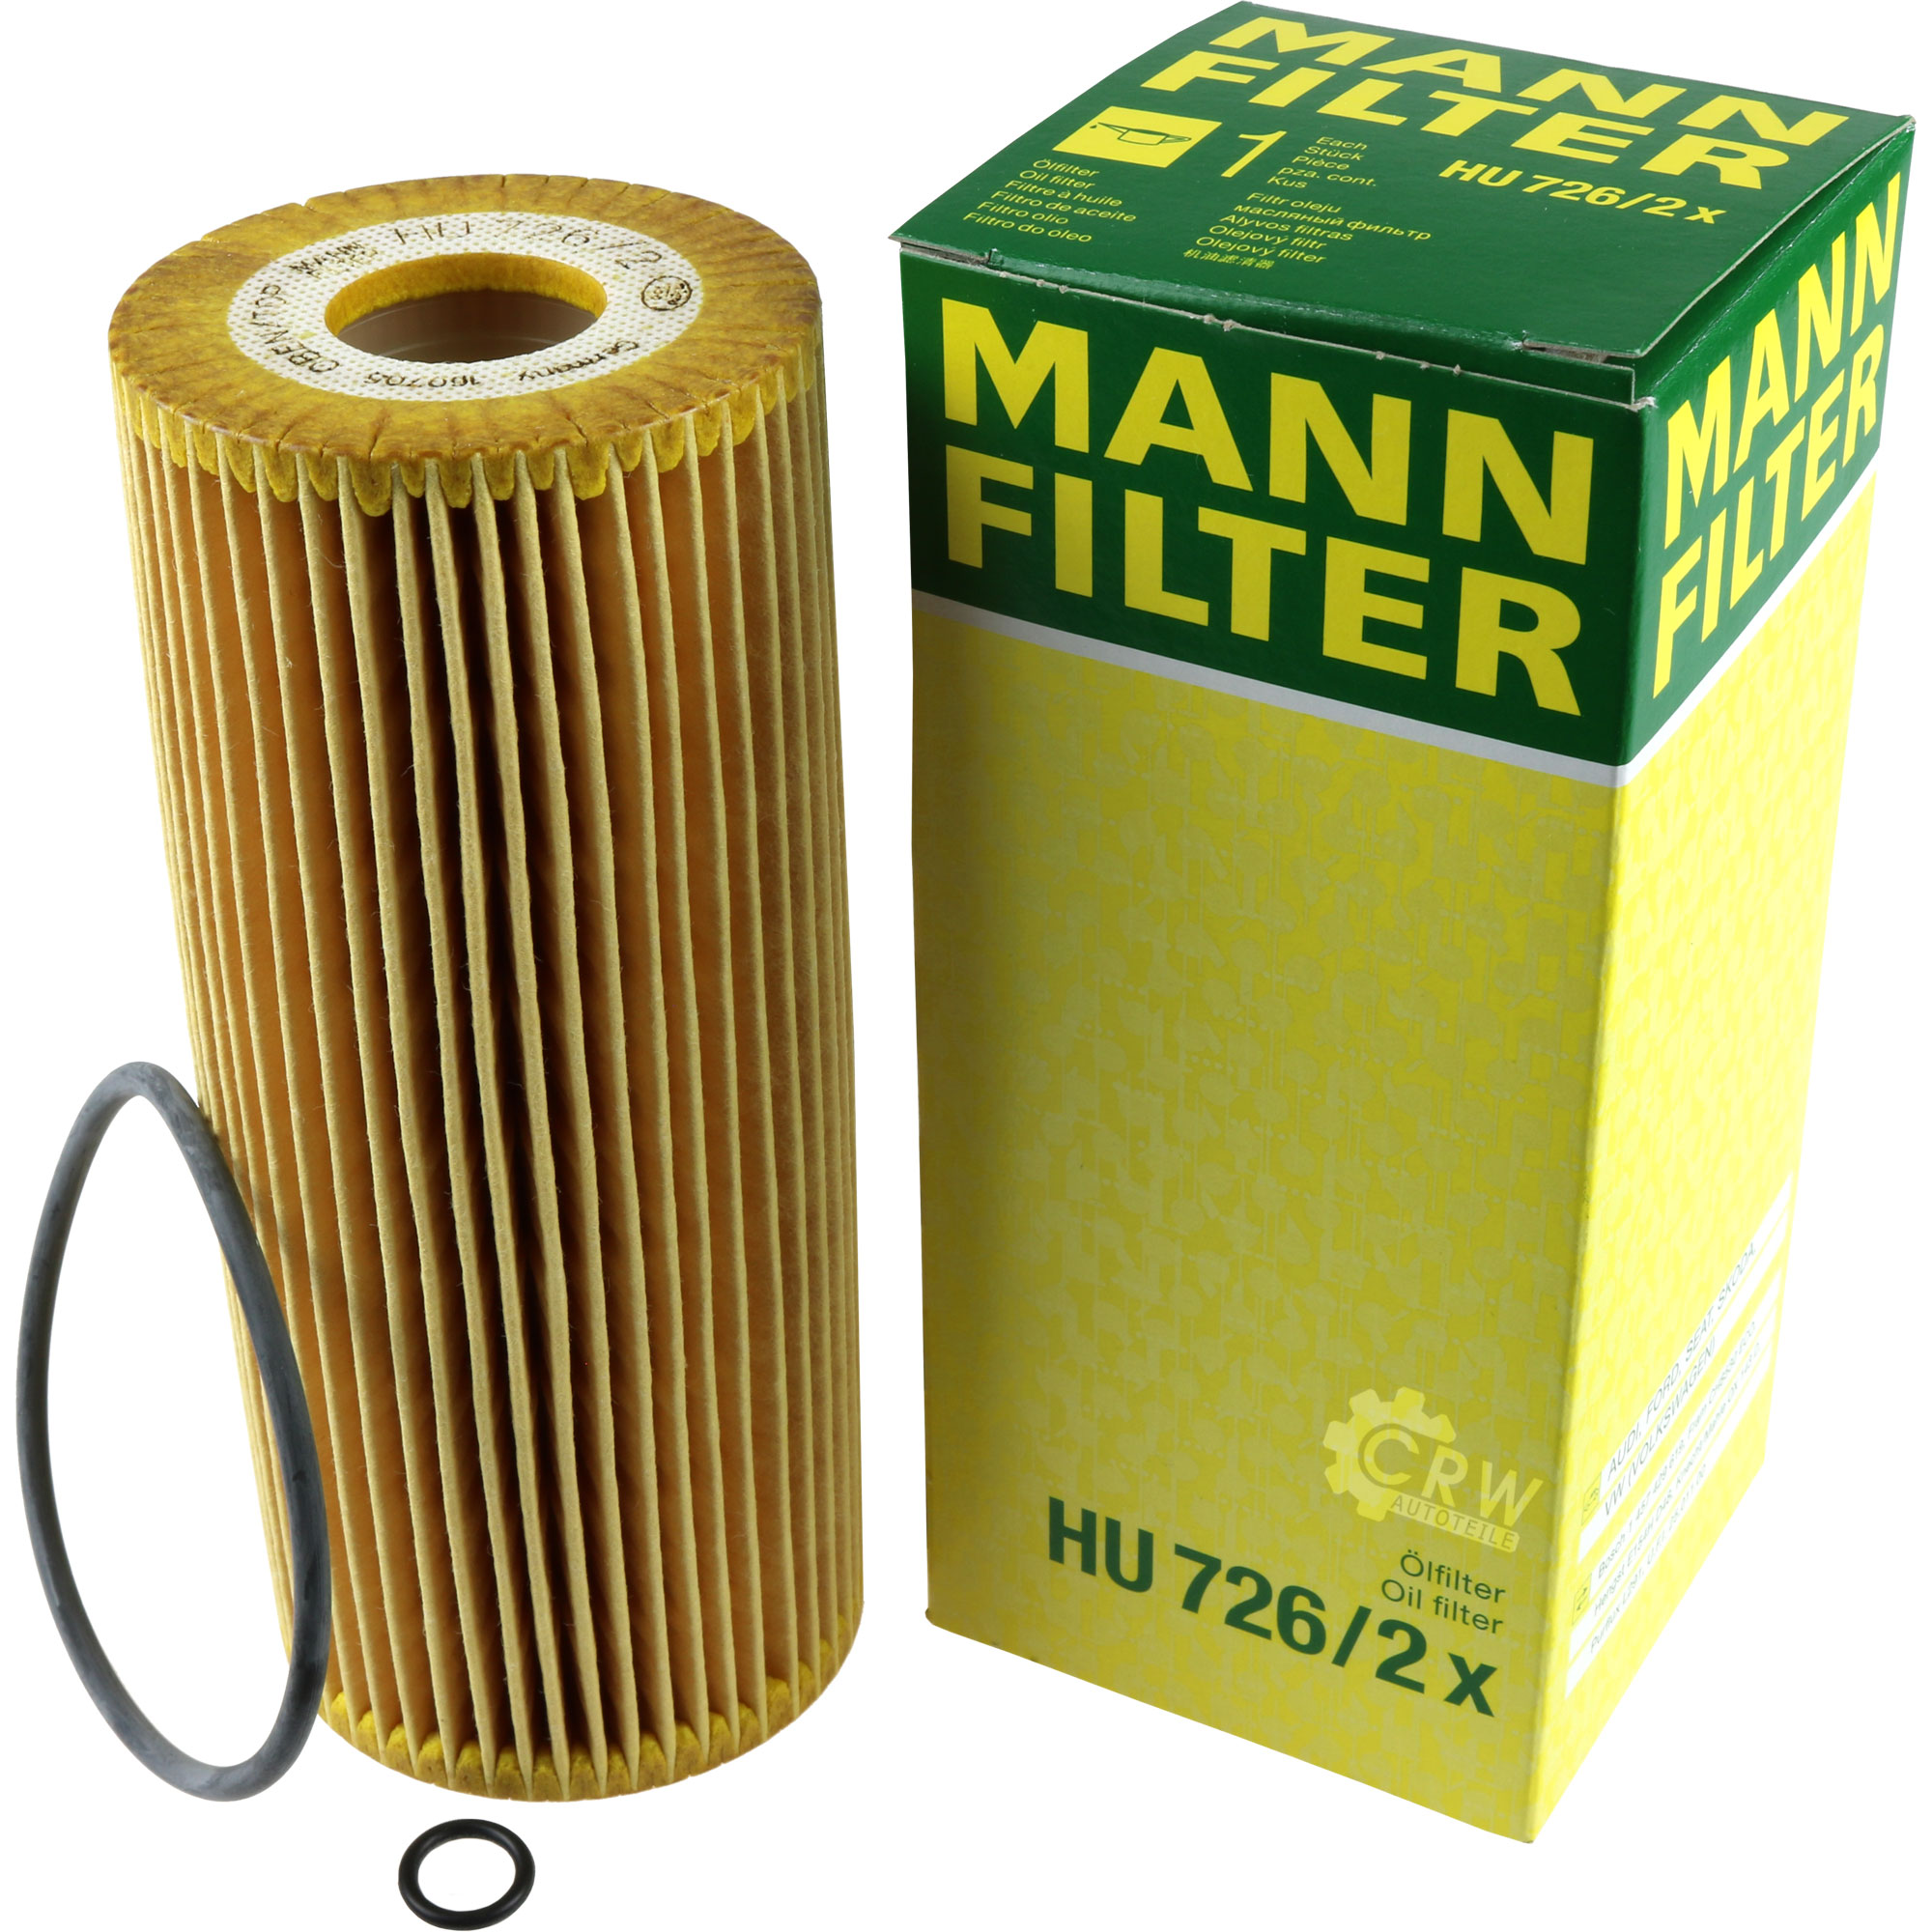 MANN-FILTER Ölfilter HU 726/2 x Oil Filter